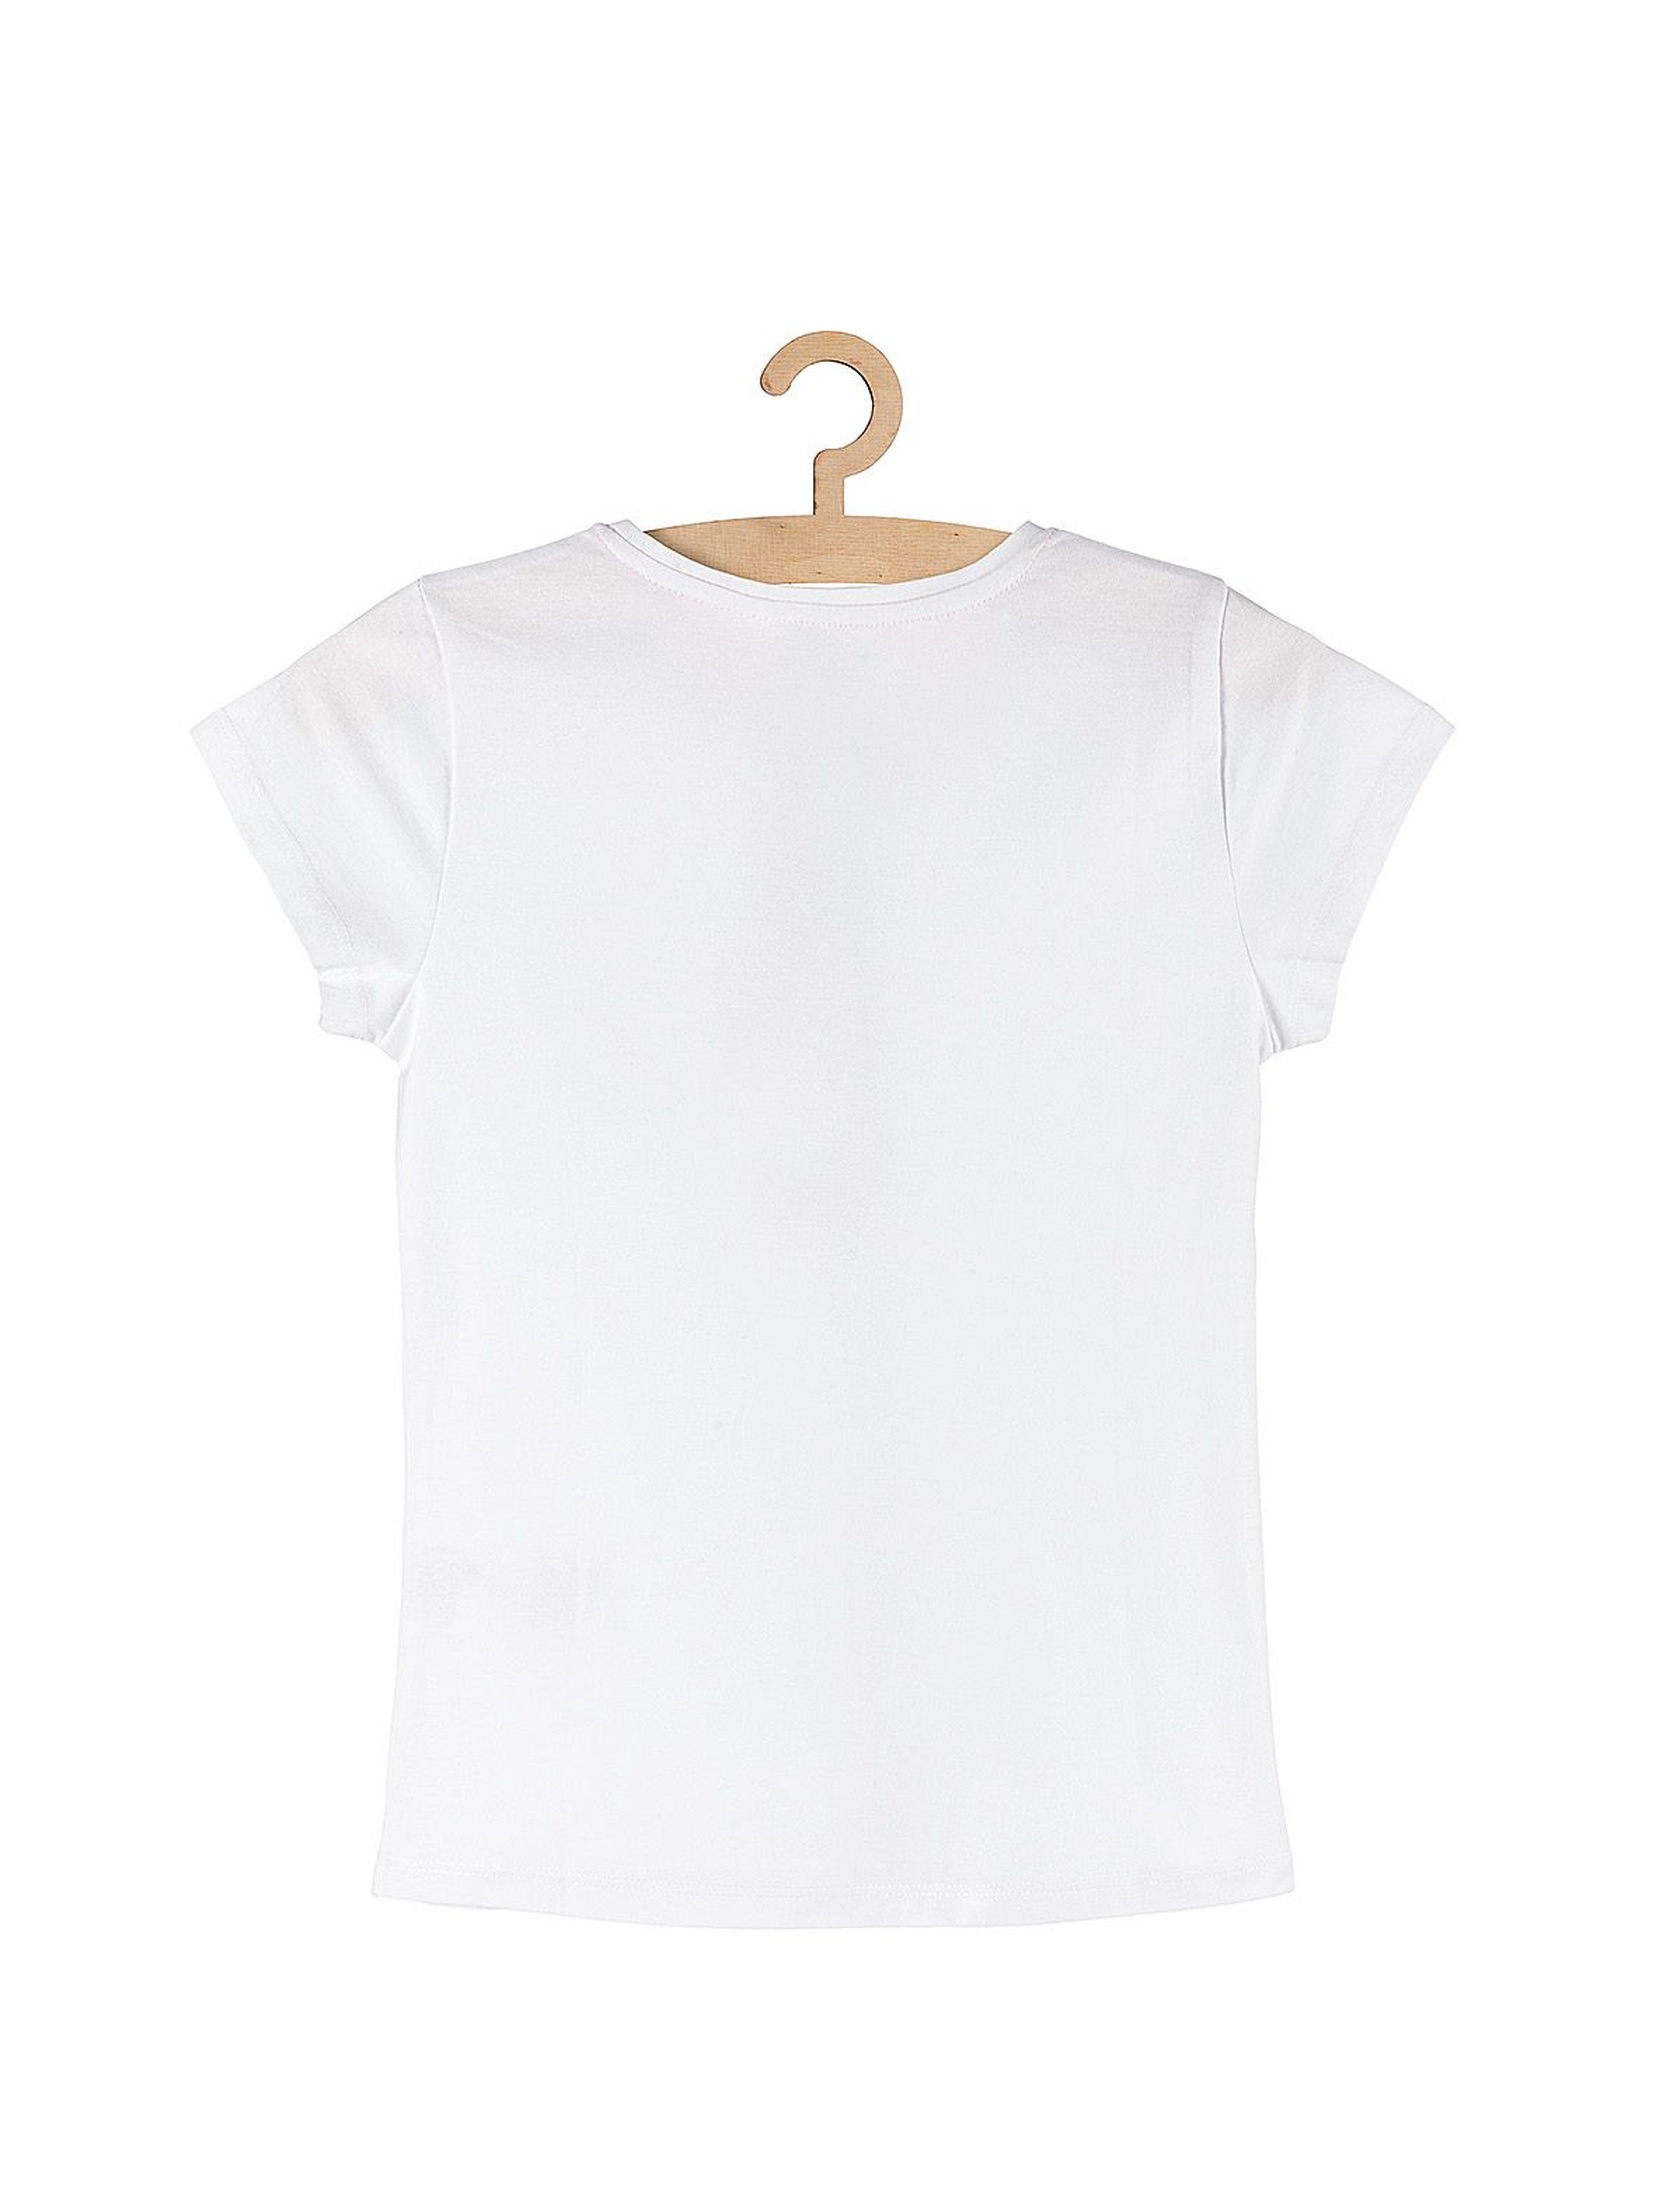 Bawełniany t-shirt dla dziewczynki- biały